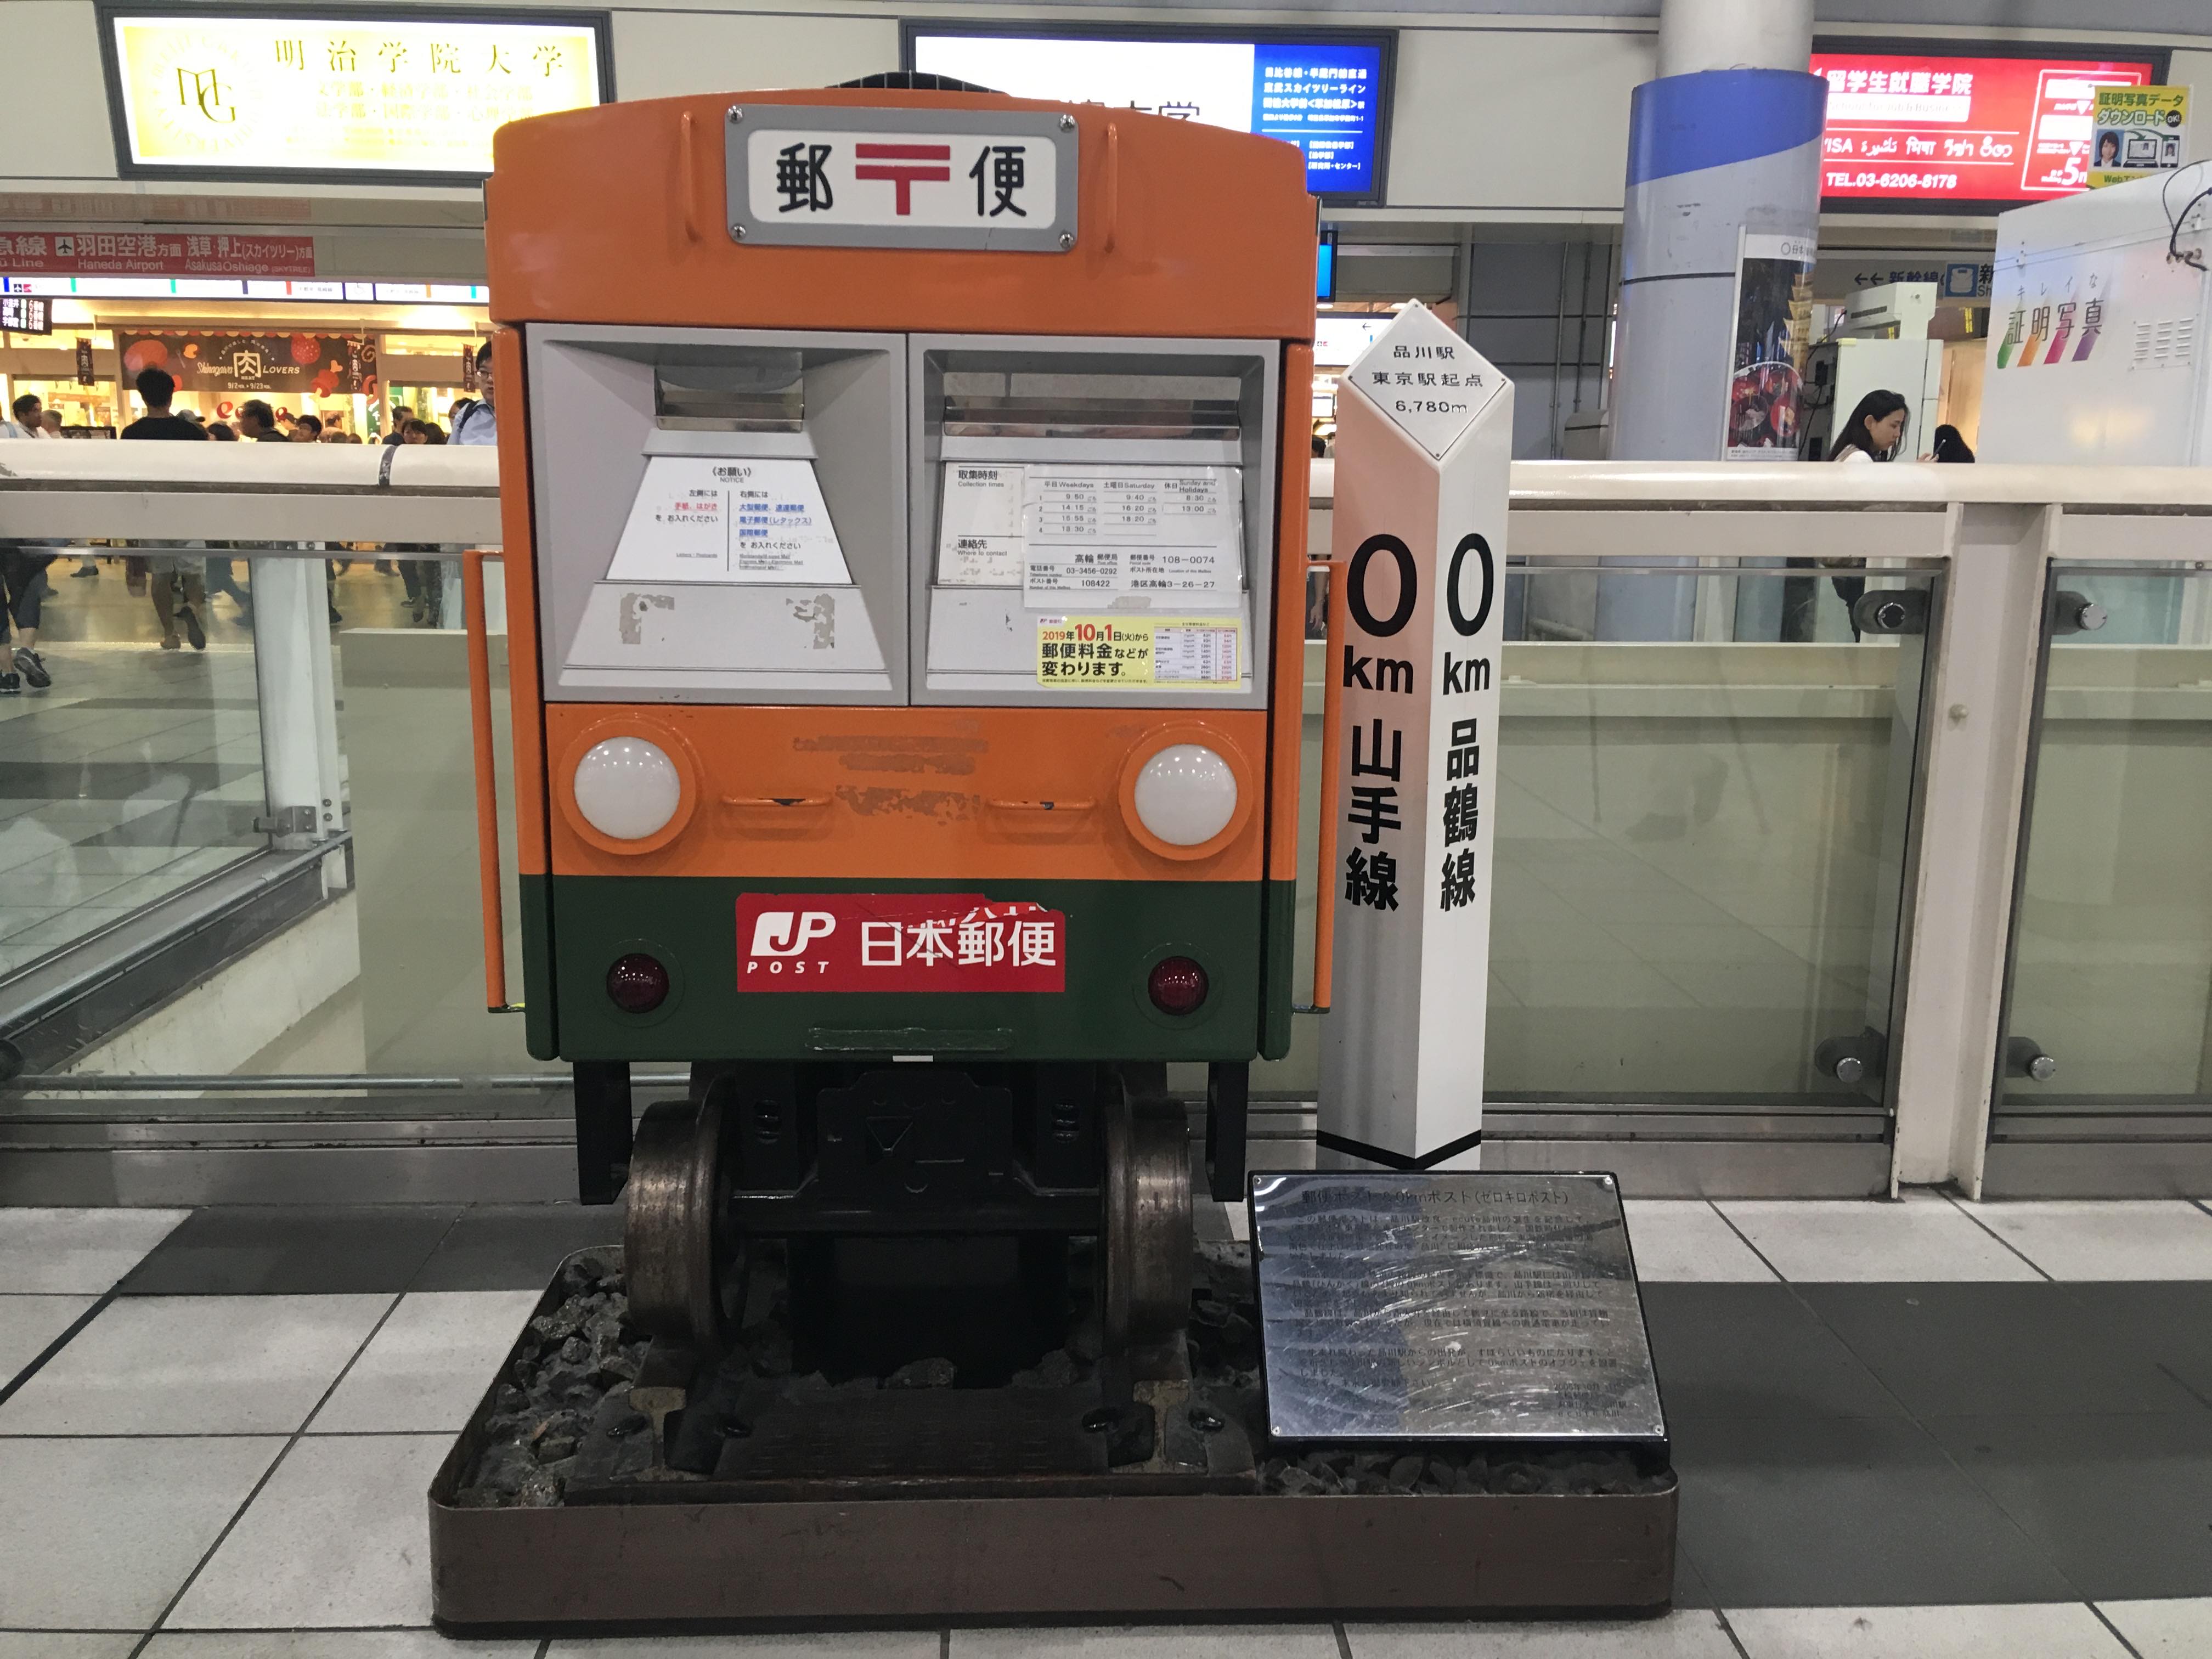 品川駅構内で発見 郵便車型ポスト 0kmポスト はみなさんもうご存知ですか 品川シーズンテラスエリアマネジメント